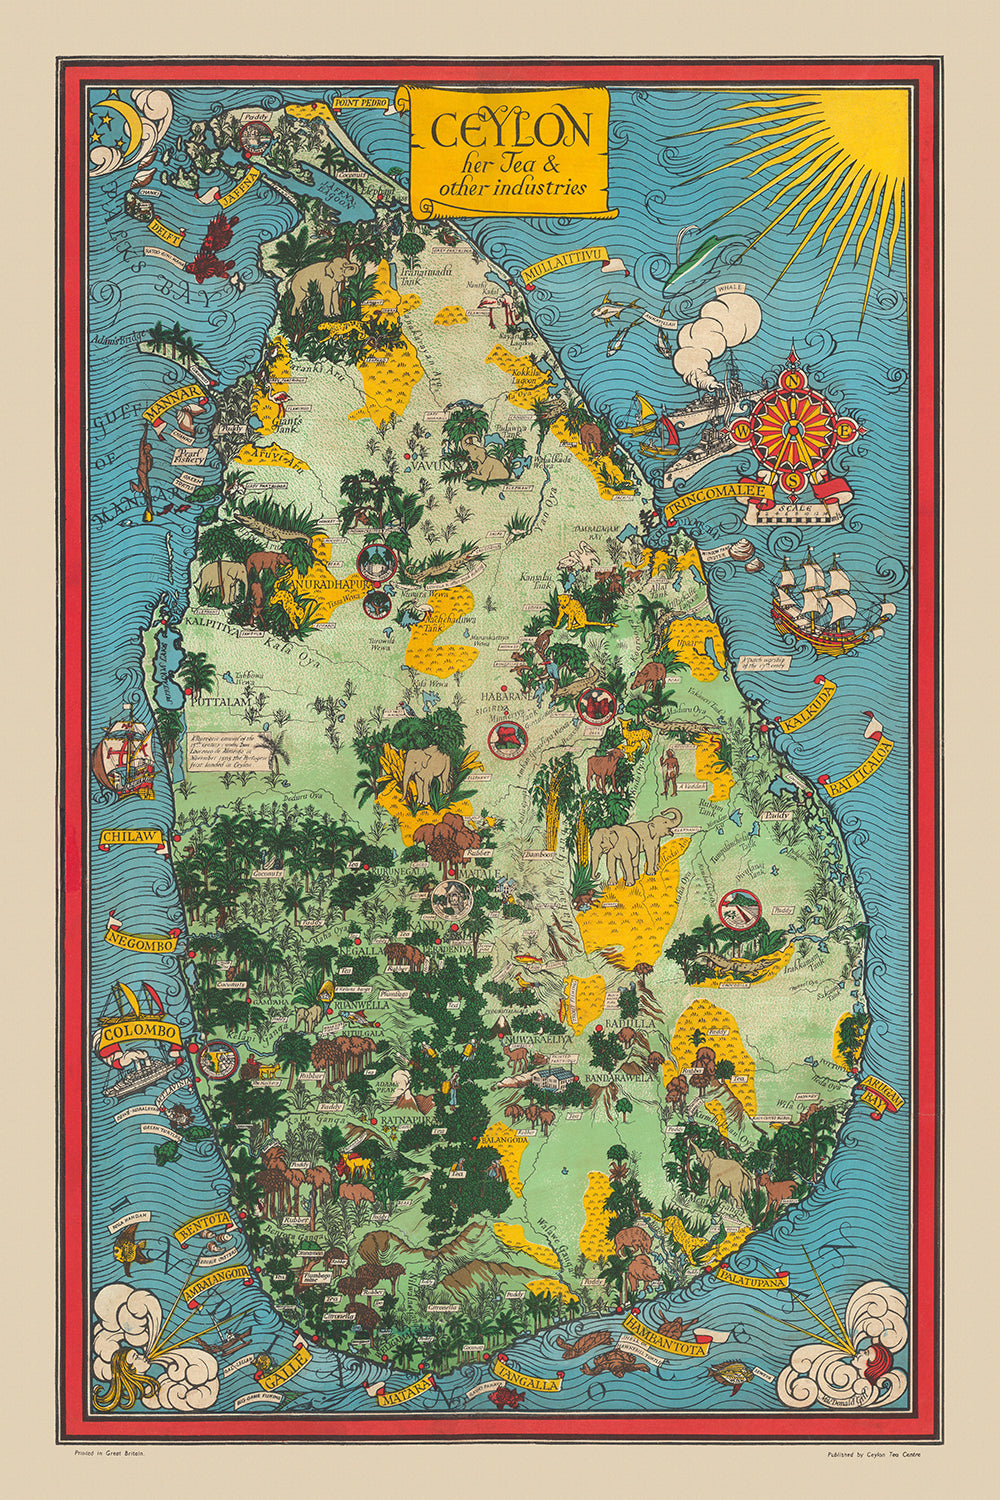 Ancienne carte picturale du Sri Lanka par Gill, 1933 : éléphants, thé, Colombo, pic d'Adam, scènes de jungle